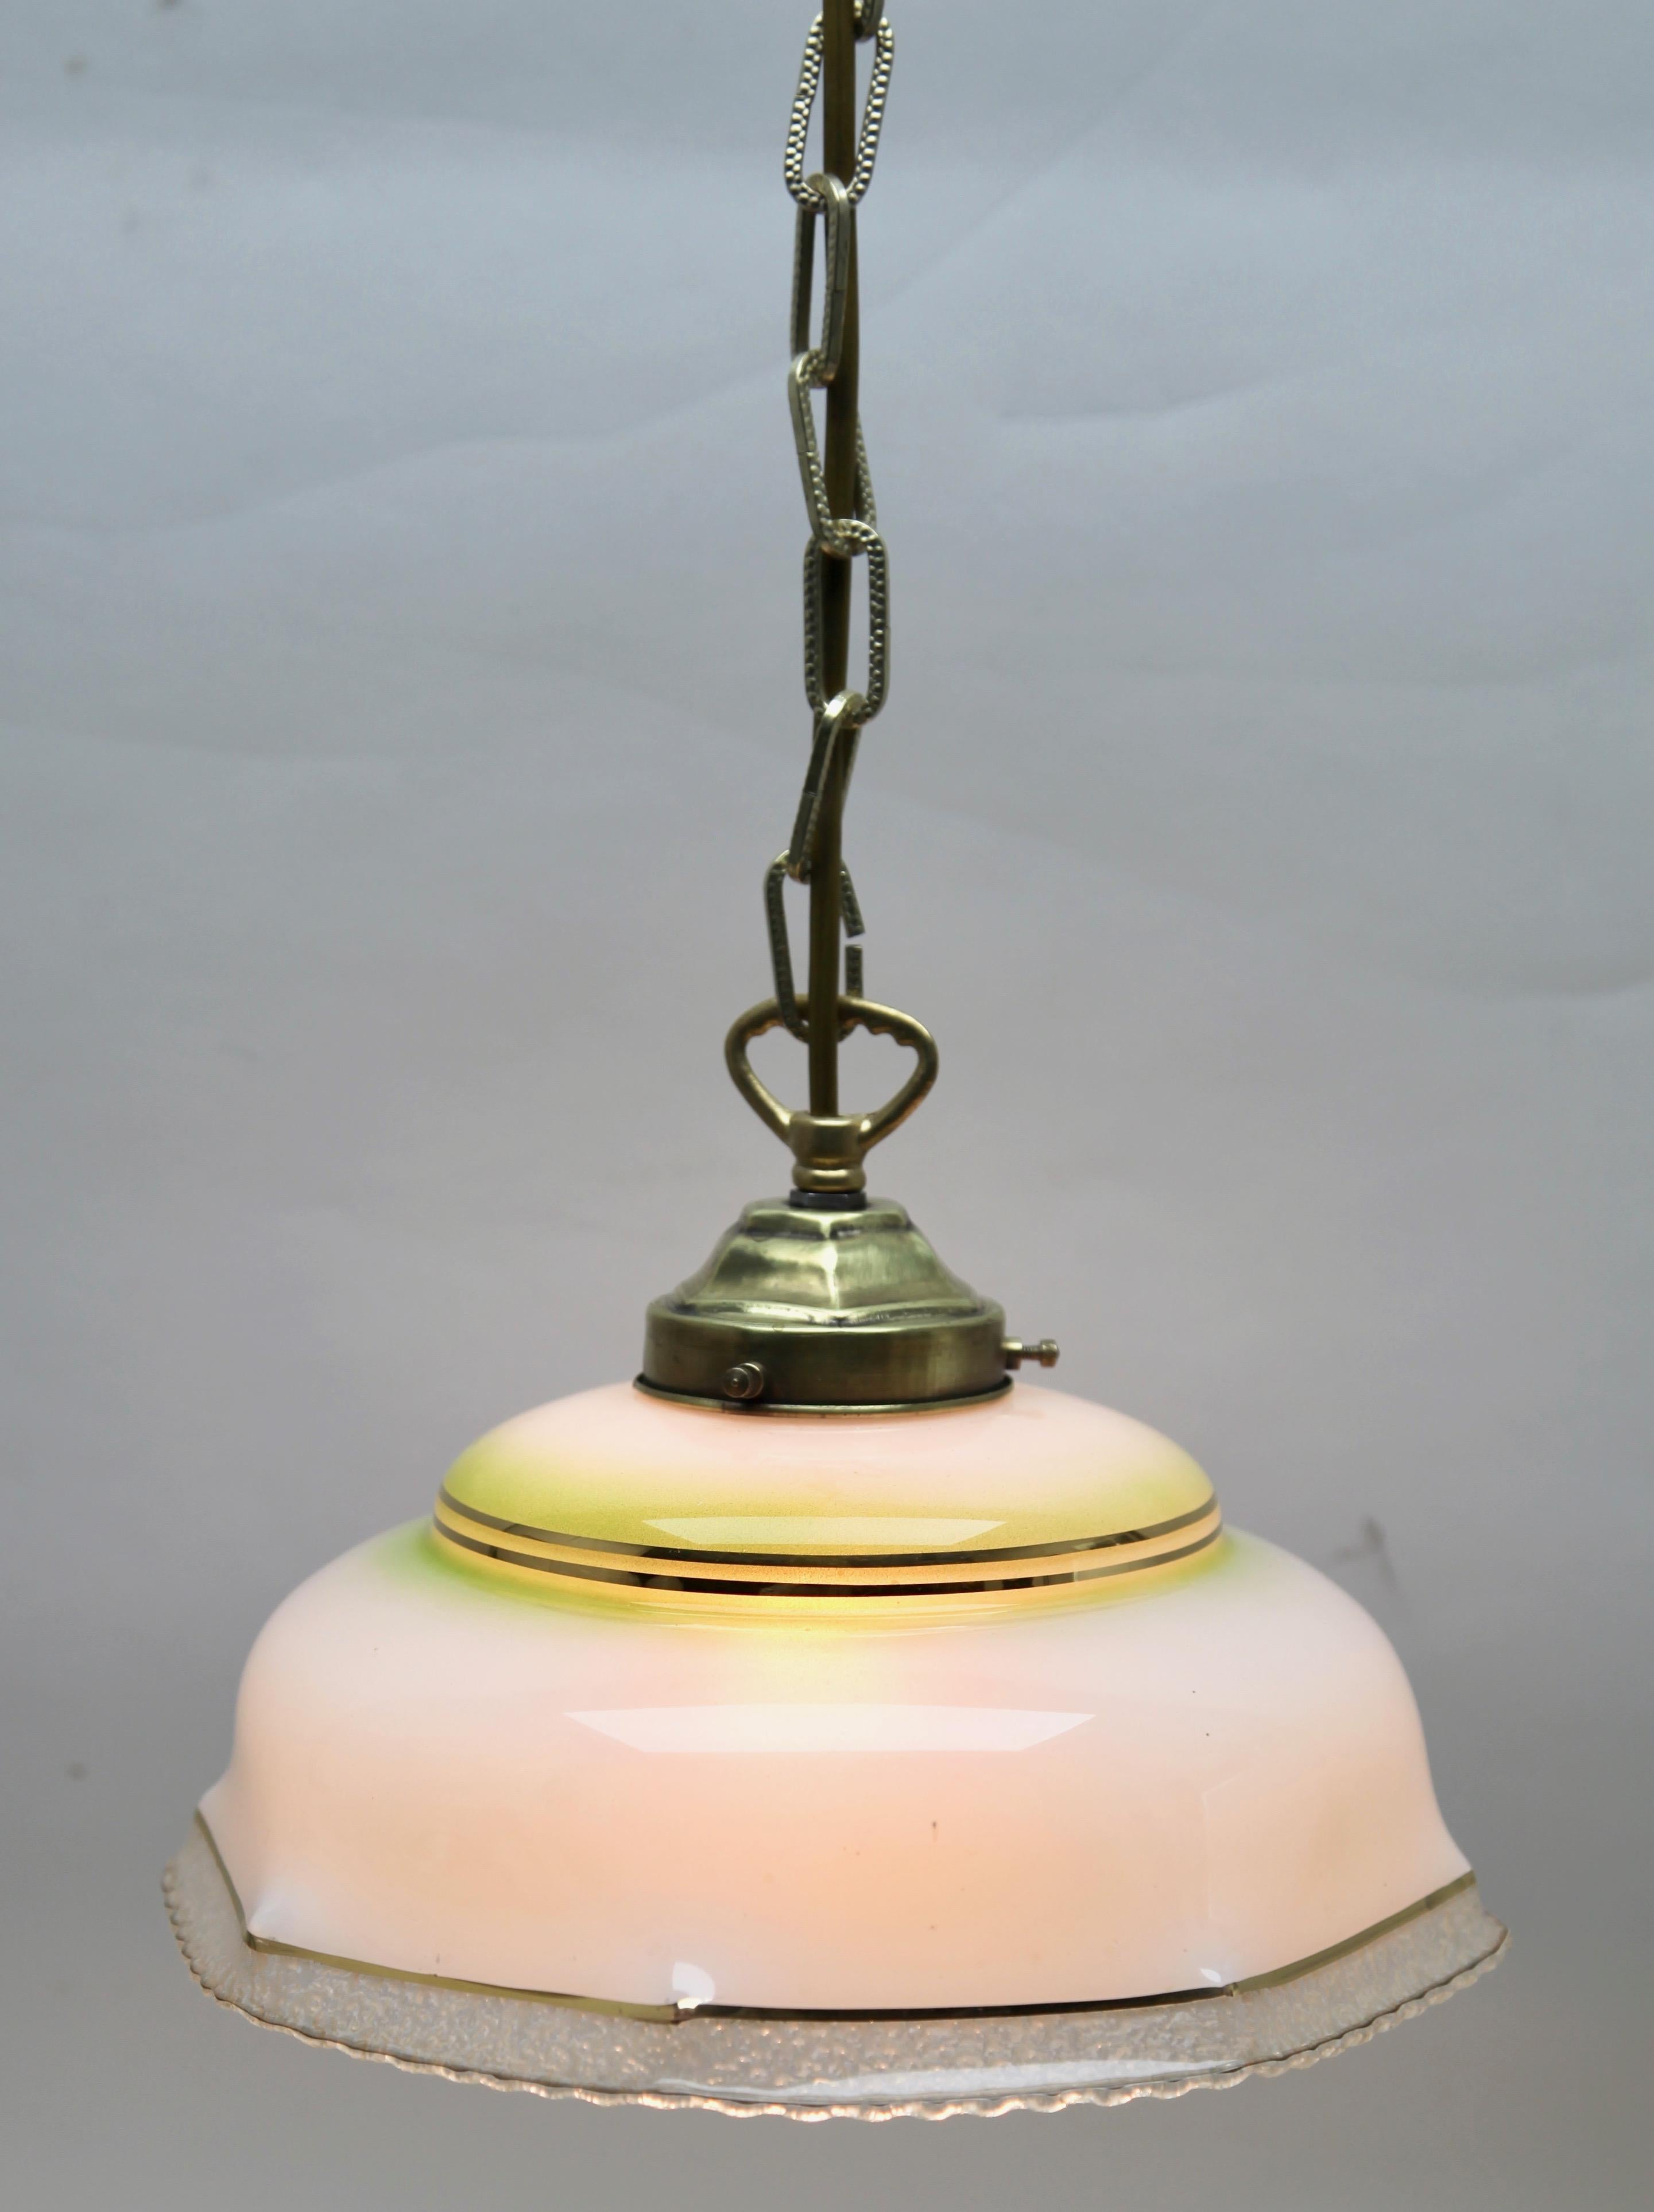 Art Glass Art Nouveau Ceiling Lamp, Scailmont Belgium Glass Shade, 1930s